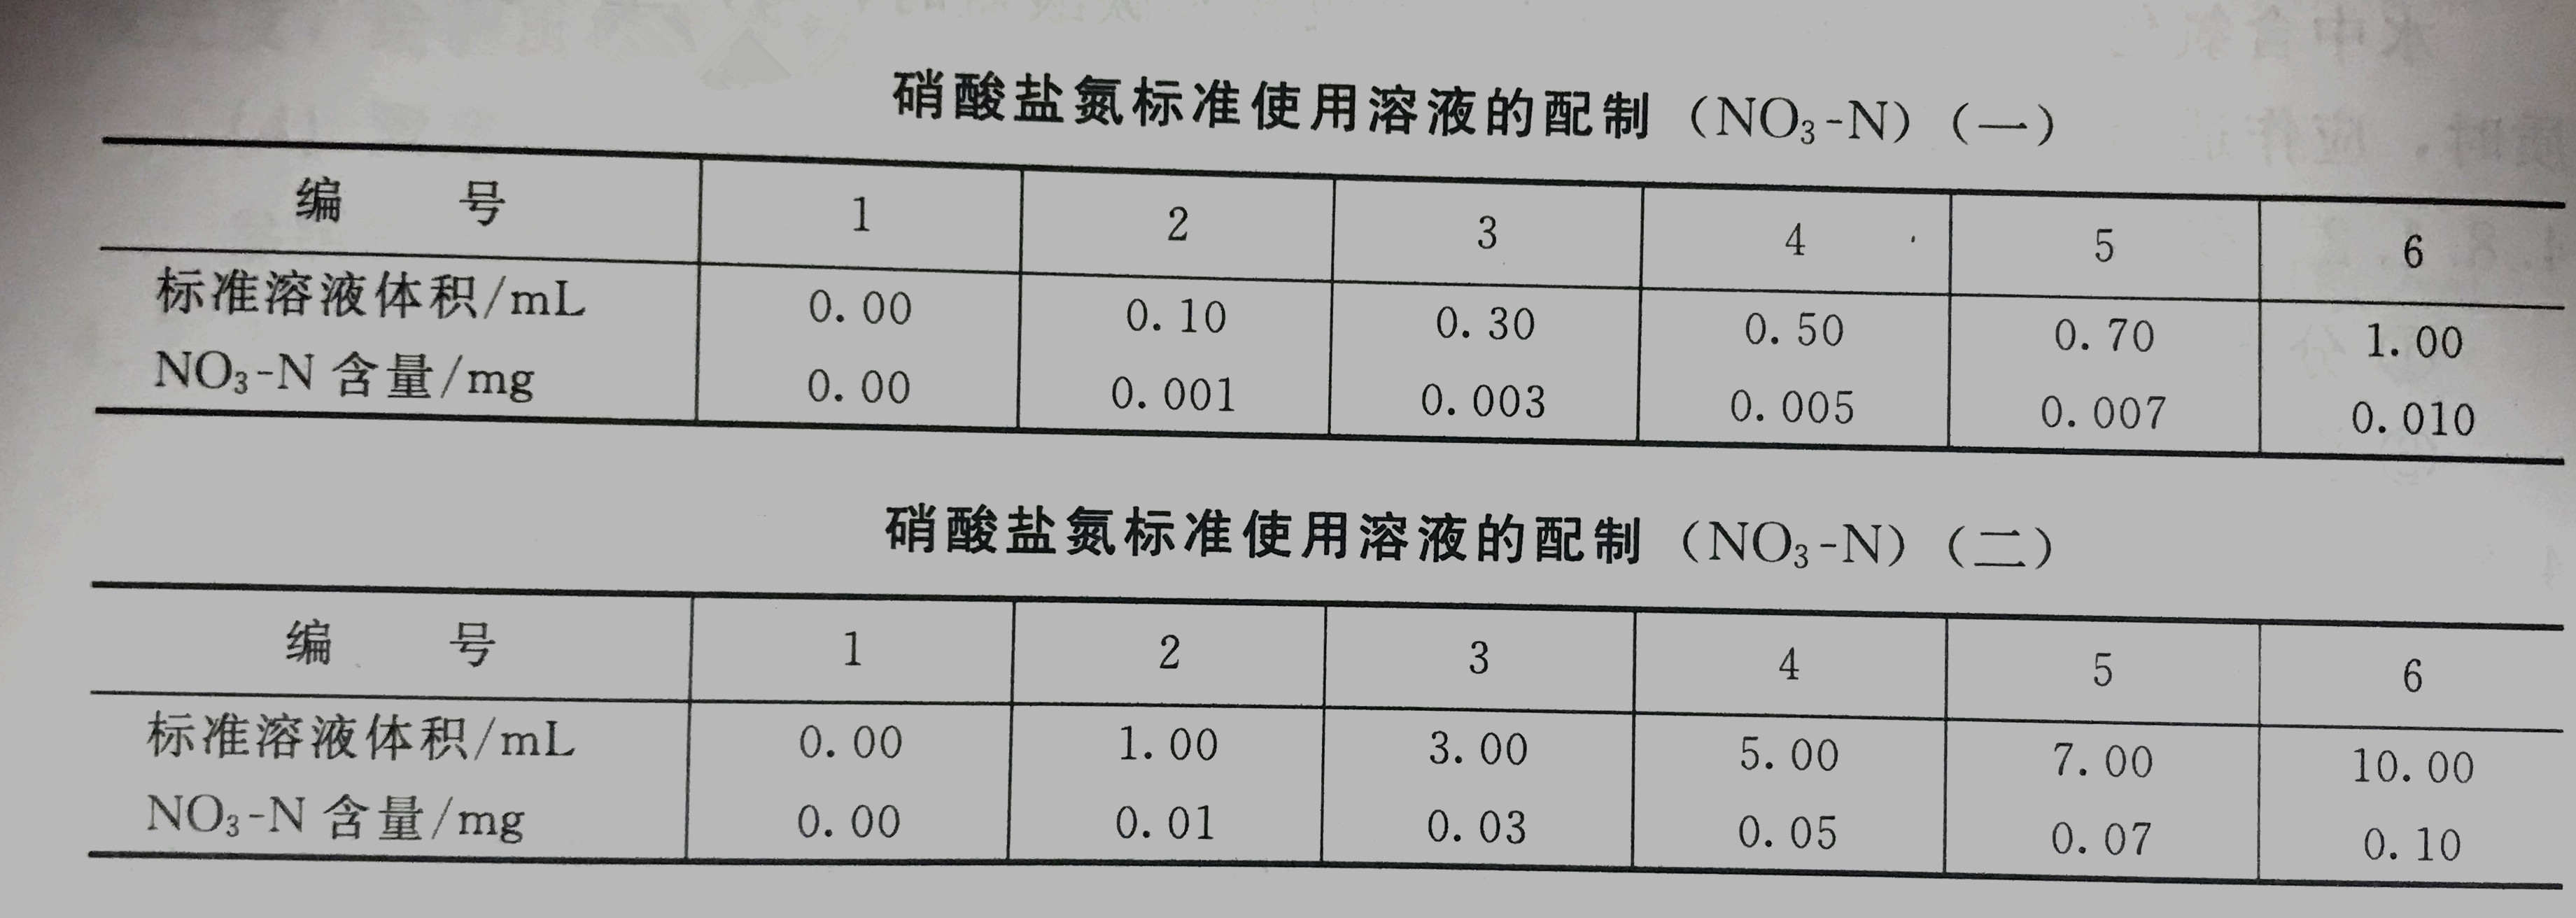 硝酸盐氮标准使用溶液配制表